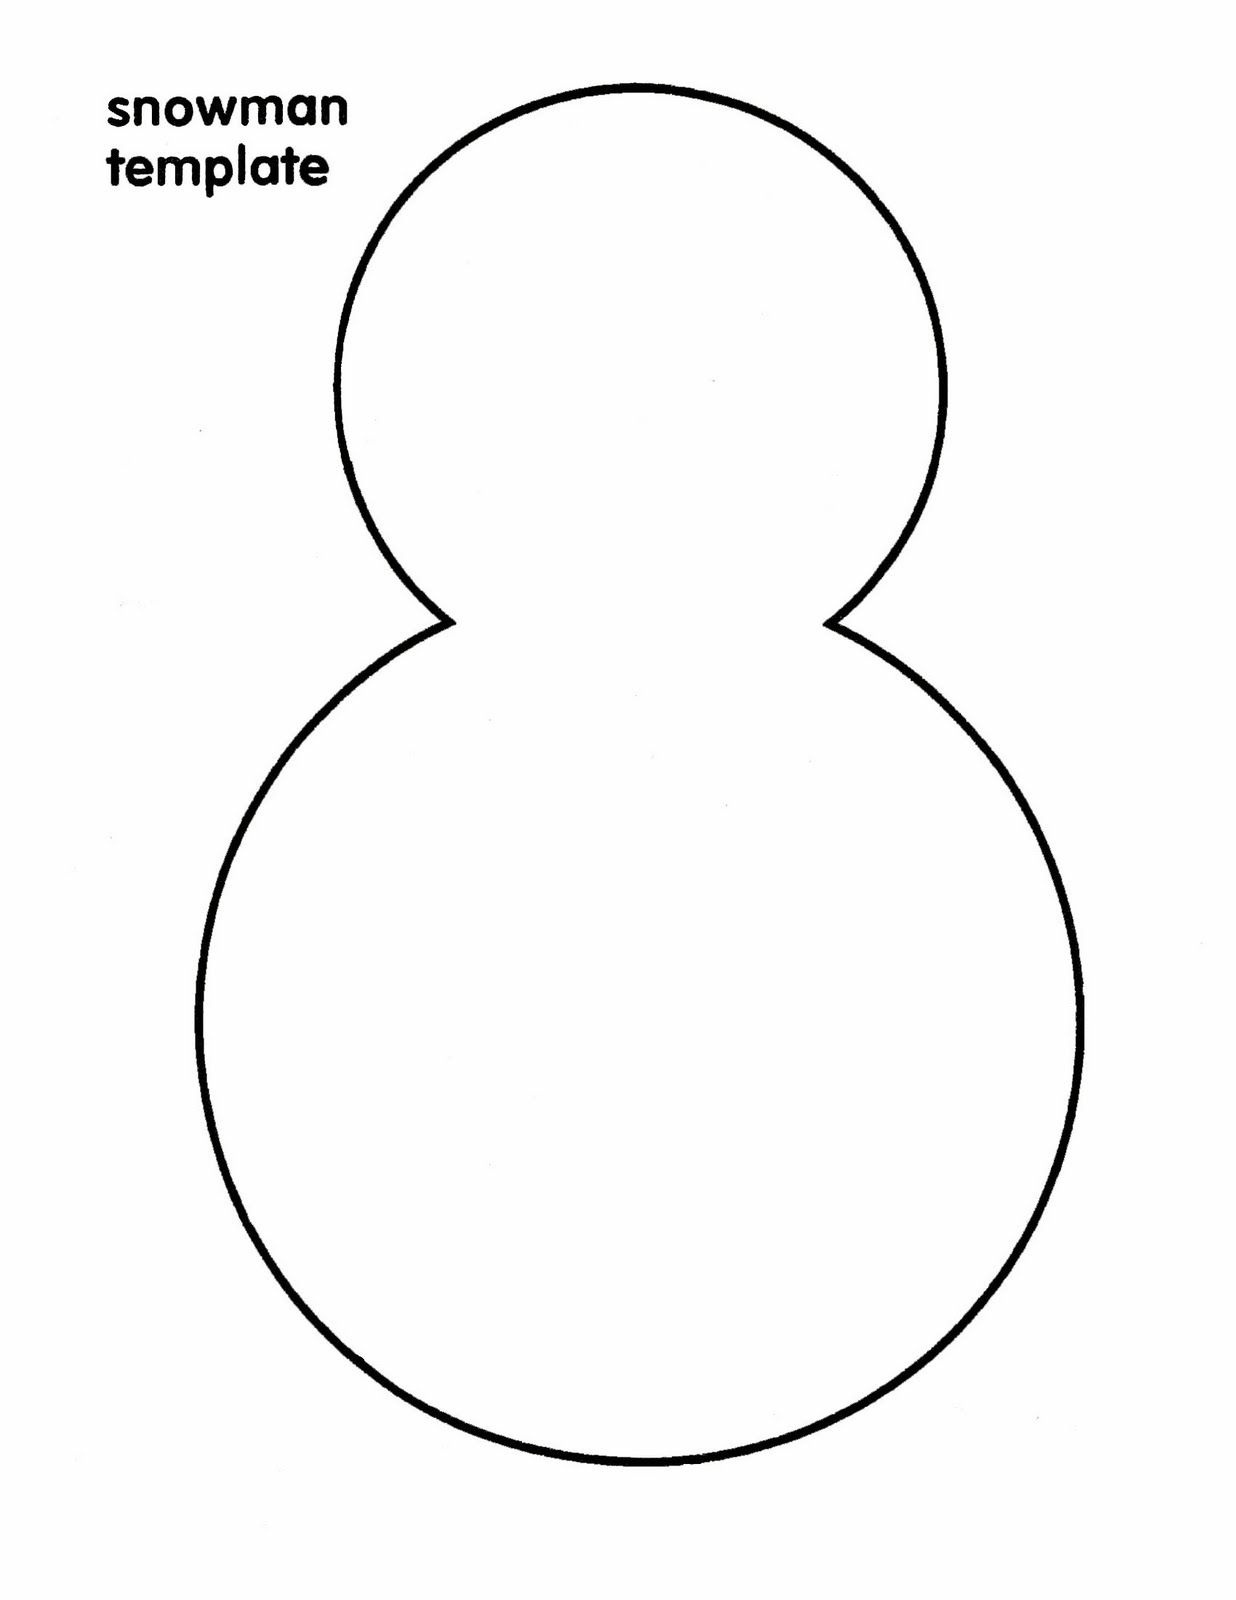 Free Snowman Templates To Print Printable Templates